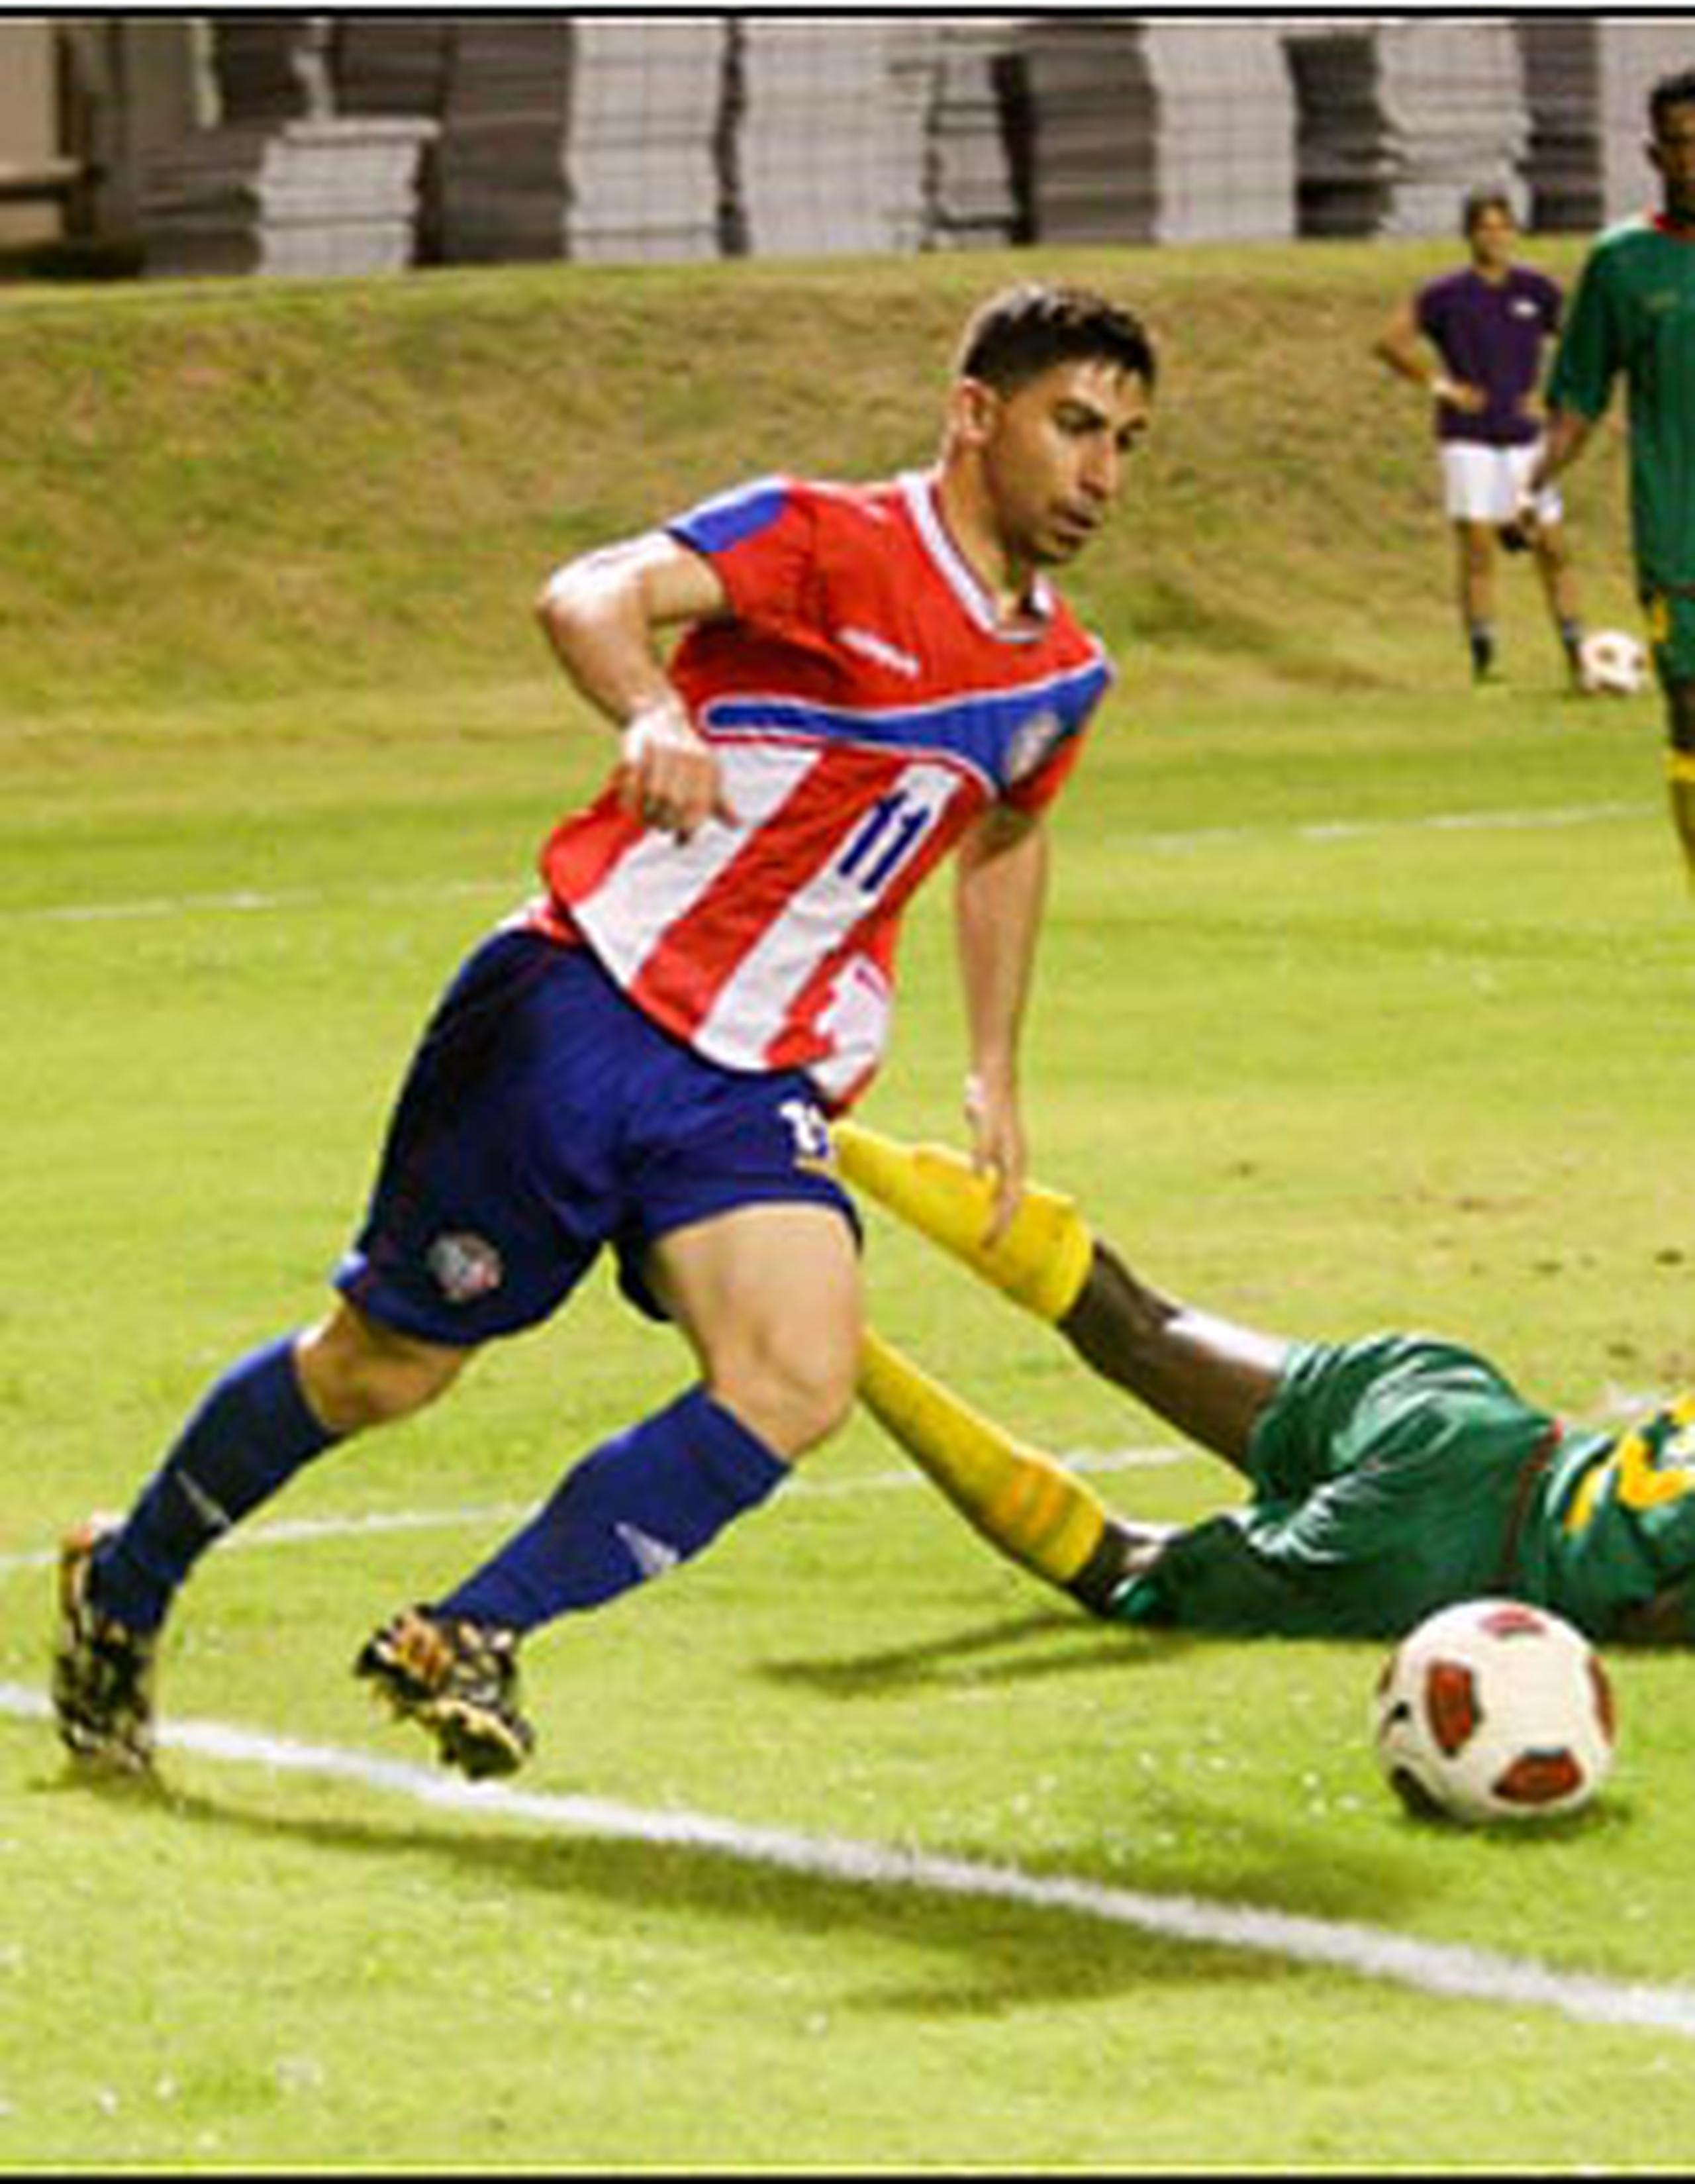 La Selección Sub-23 –categoría en que se juega el fútbol olímpico– volverá al césped del Loubriel el domingo 28 de junio, para enfrentarse al conjunto de Trinidad y Tobago, a las 6:00 p.m. (Suministrada)